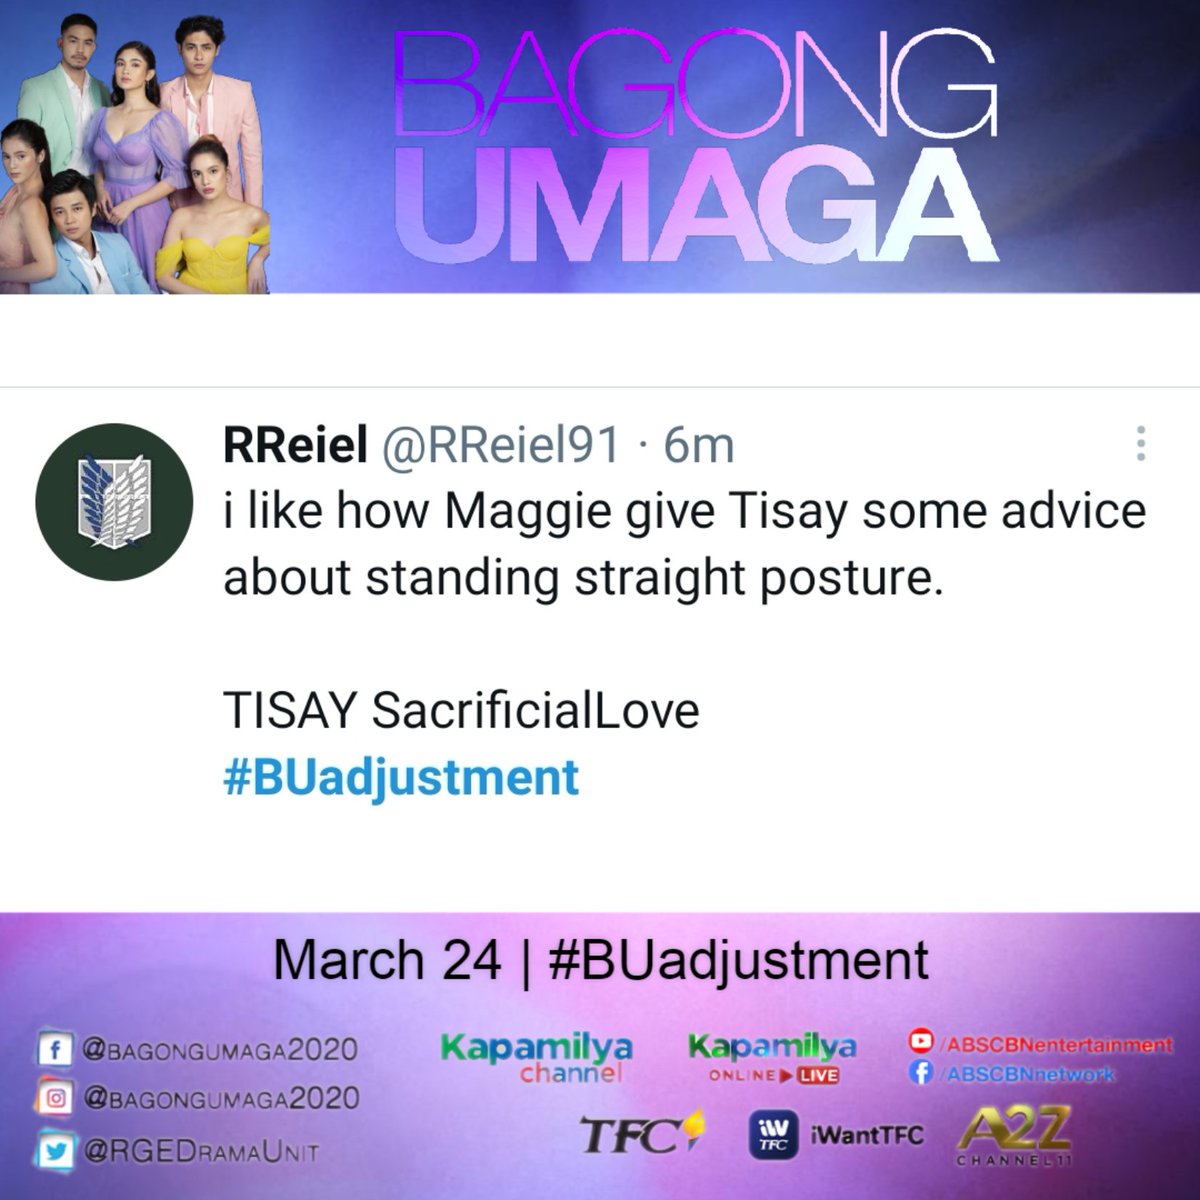 Are you ready for Tisay version 2.0? #BUadjustment #BagongUmaga #RGEDramaUnit